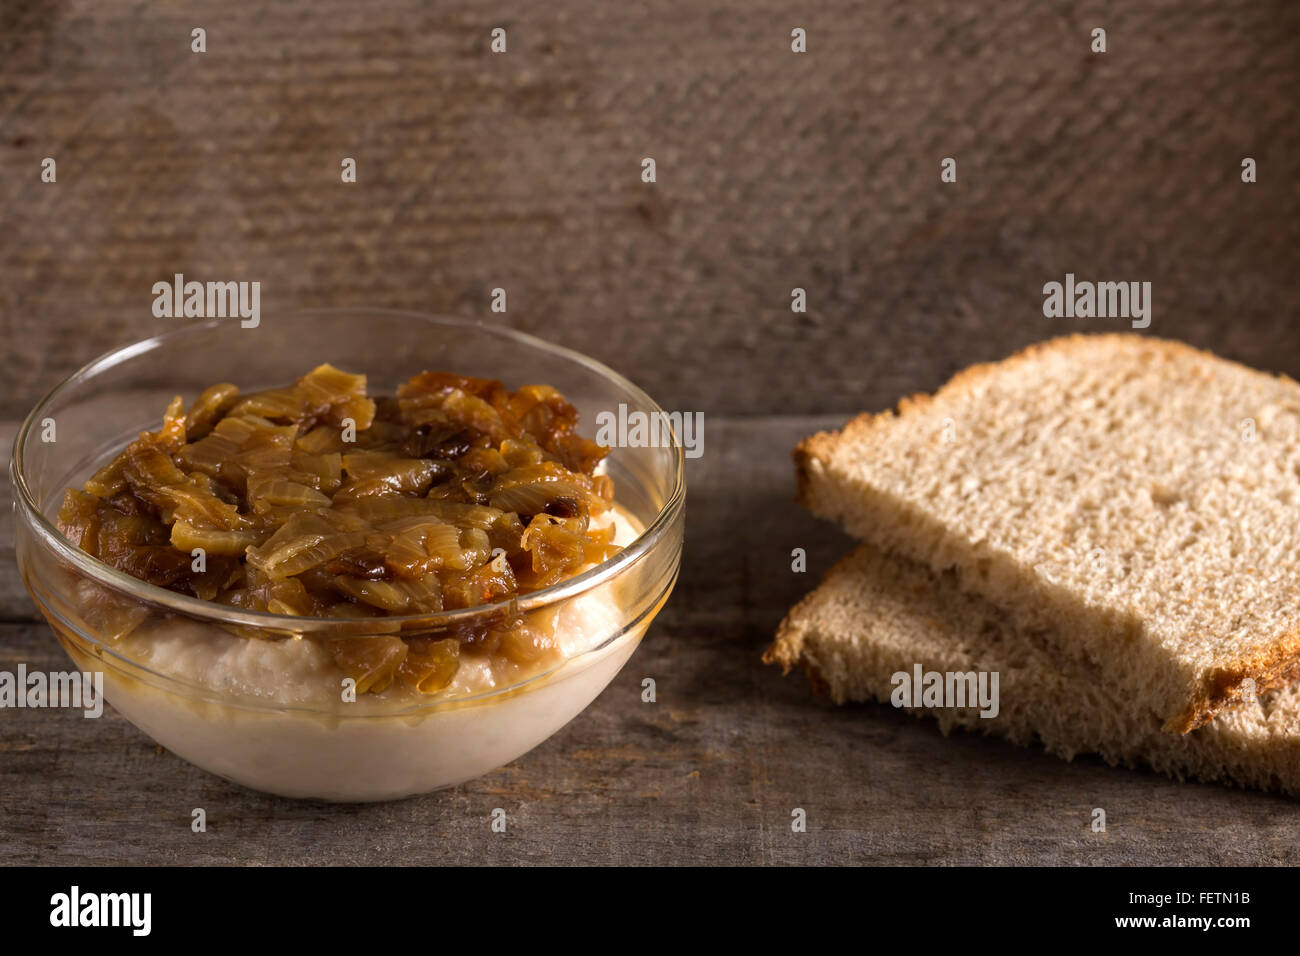 La nourriture traditionnelle purée de haricots 'iahnie» avec oignon frit sur le dessus et du pain frais Banque D'Images